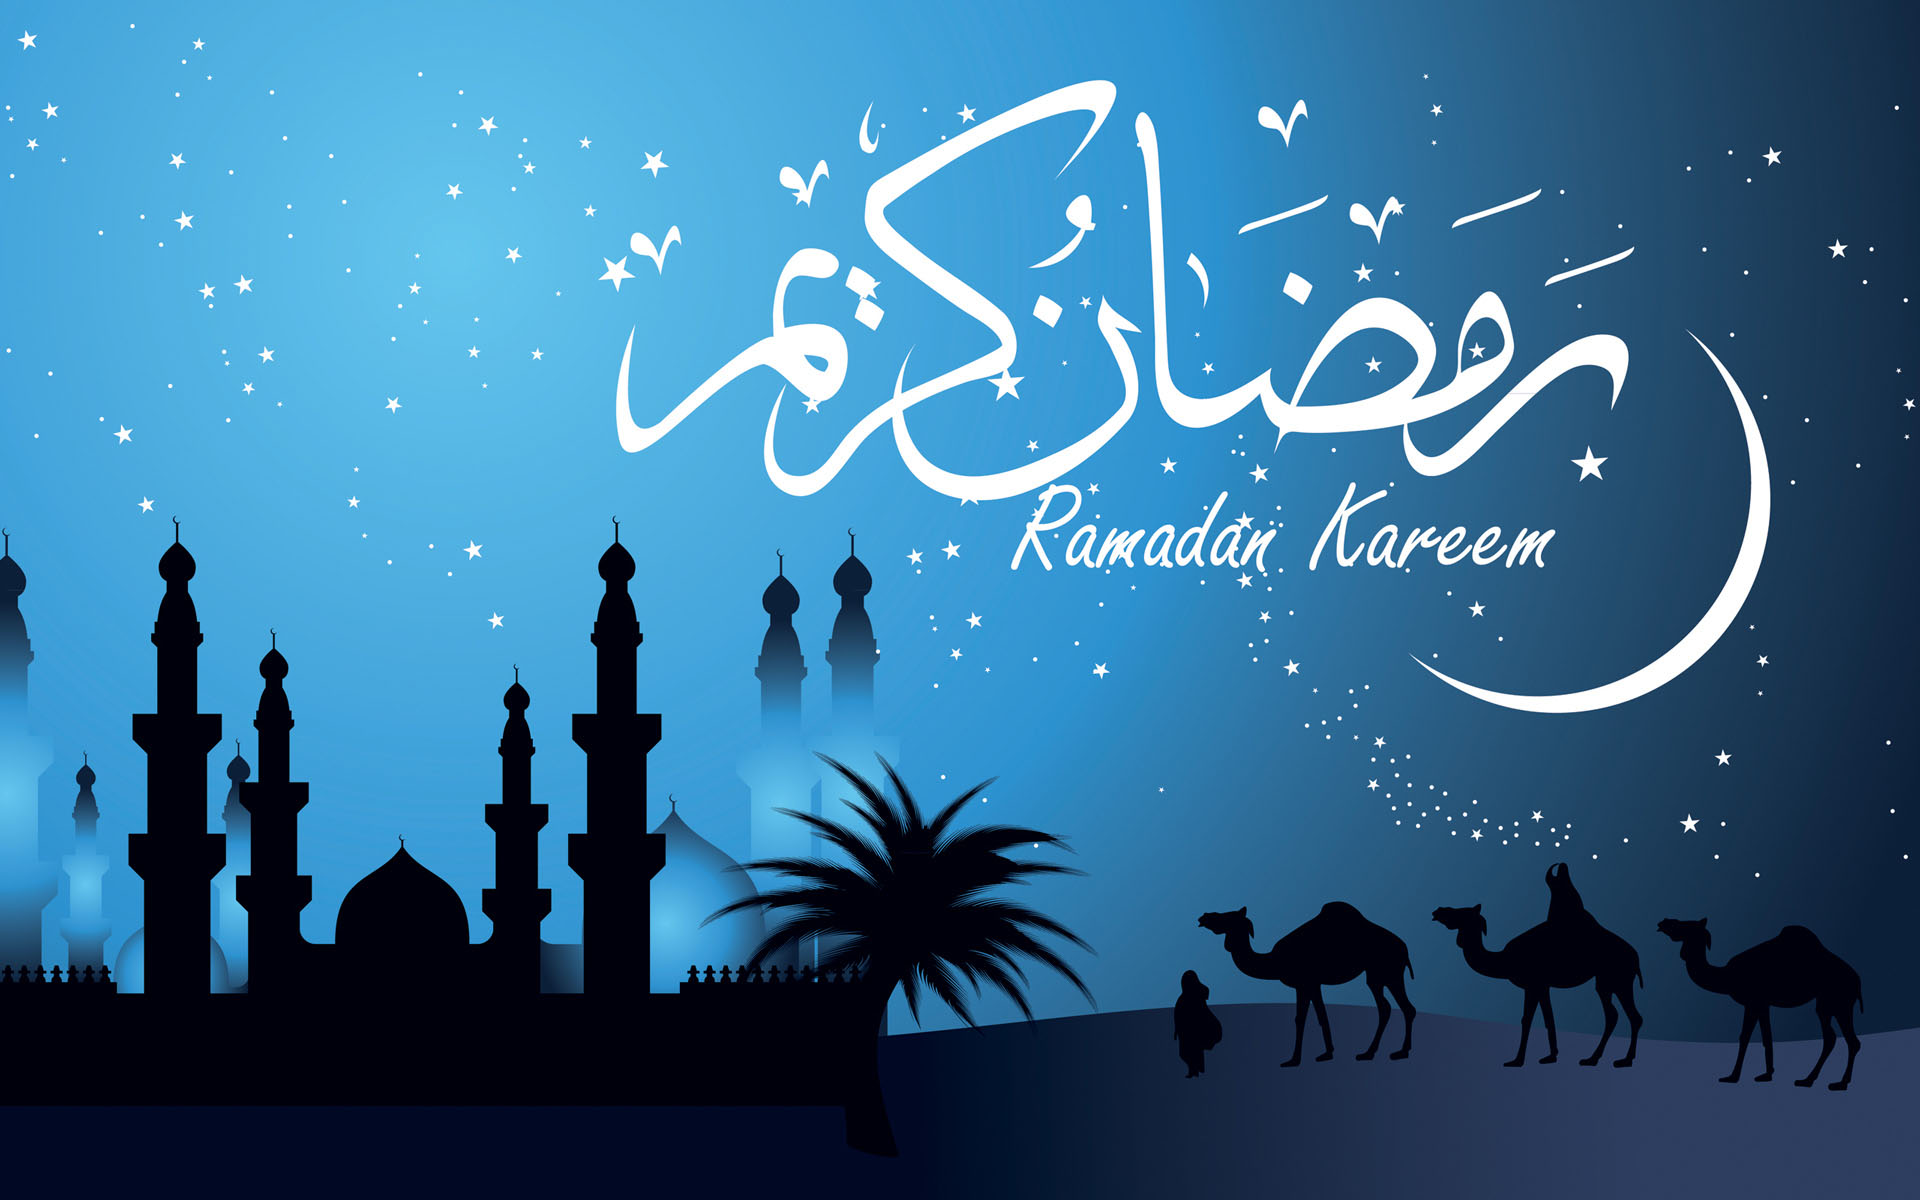 Hd Ramadan Wallpaper - Ramadan Kareem 2018 Arabic - HD Wallpaper 